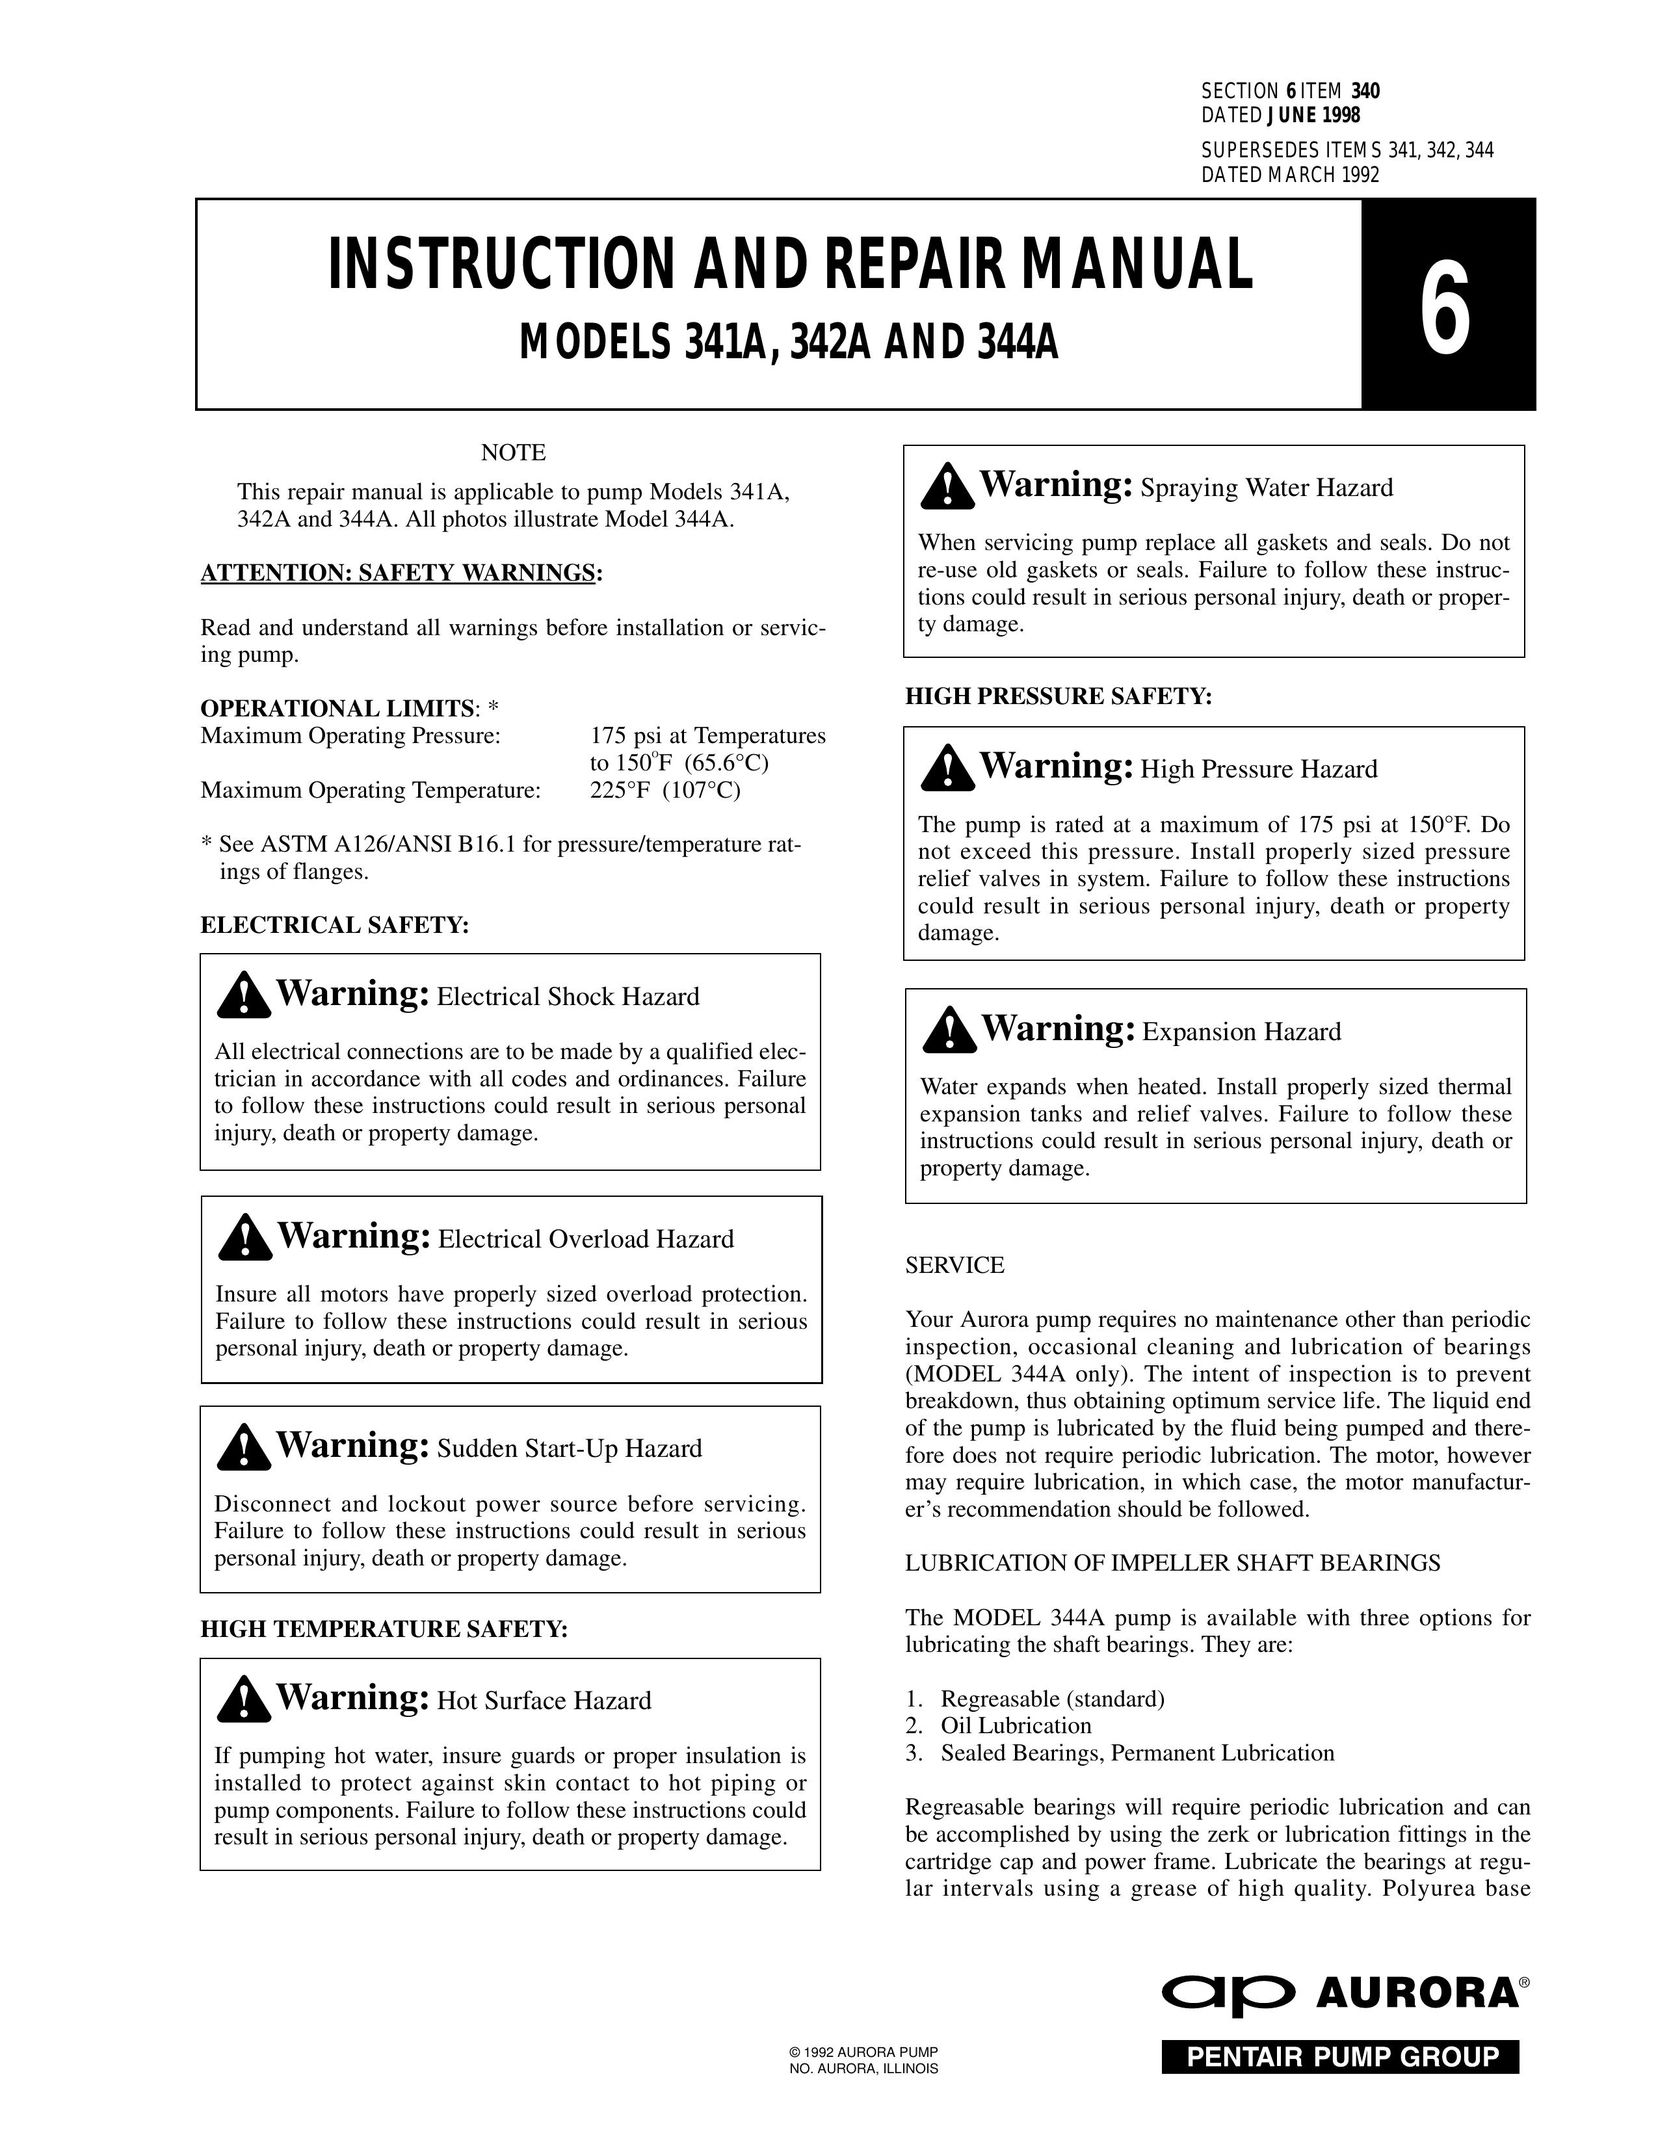 Aurora of America 342A Heat Pump User Manual